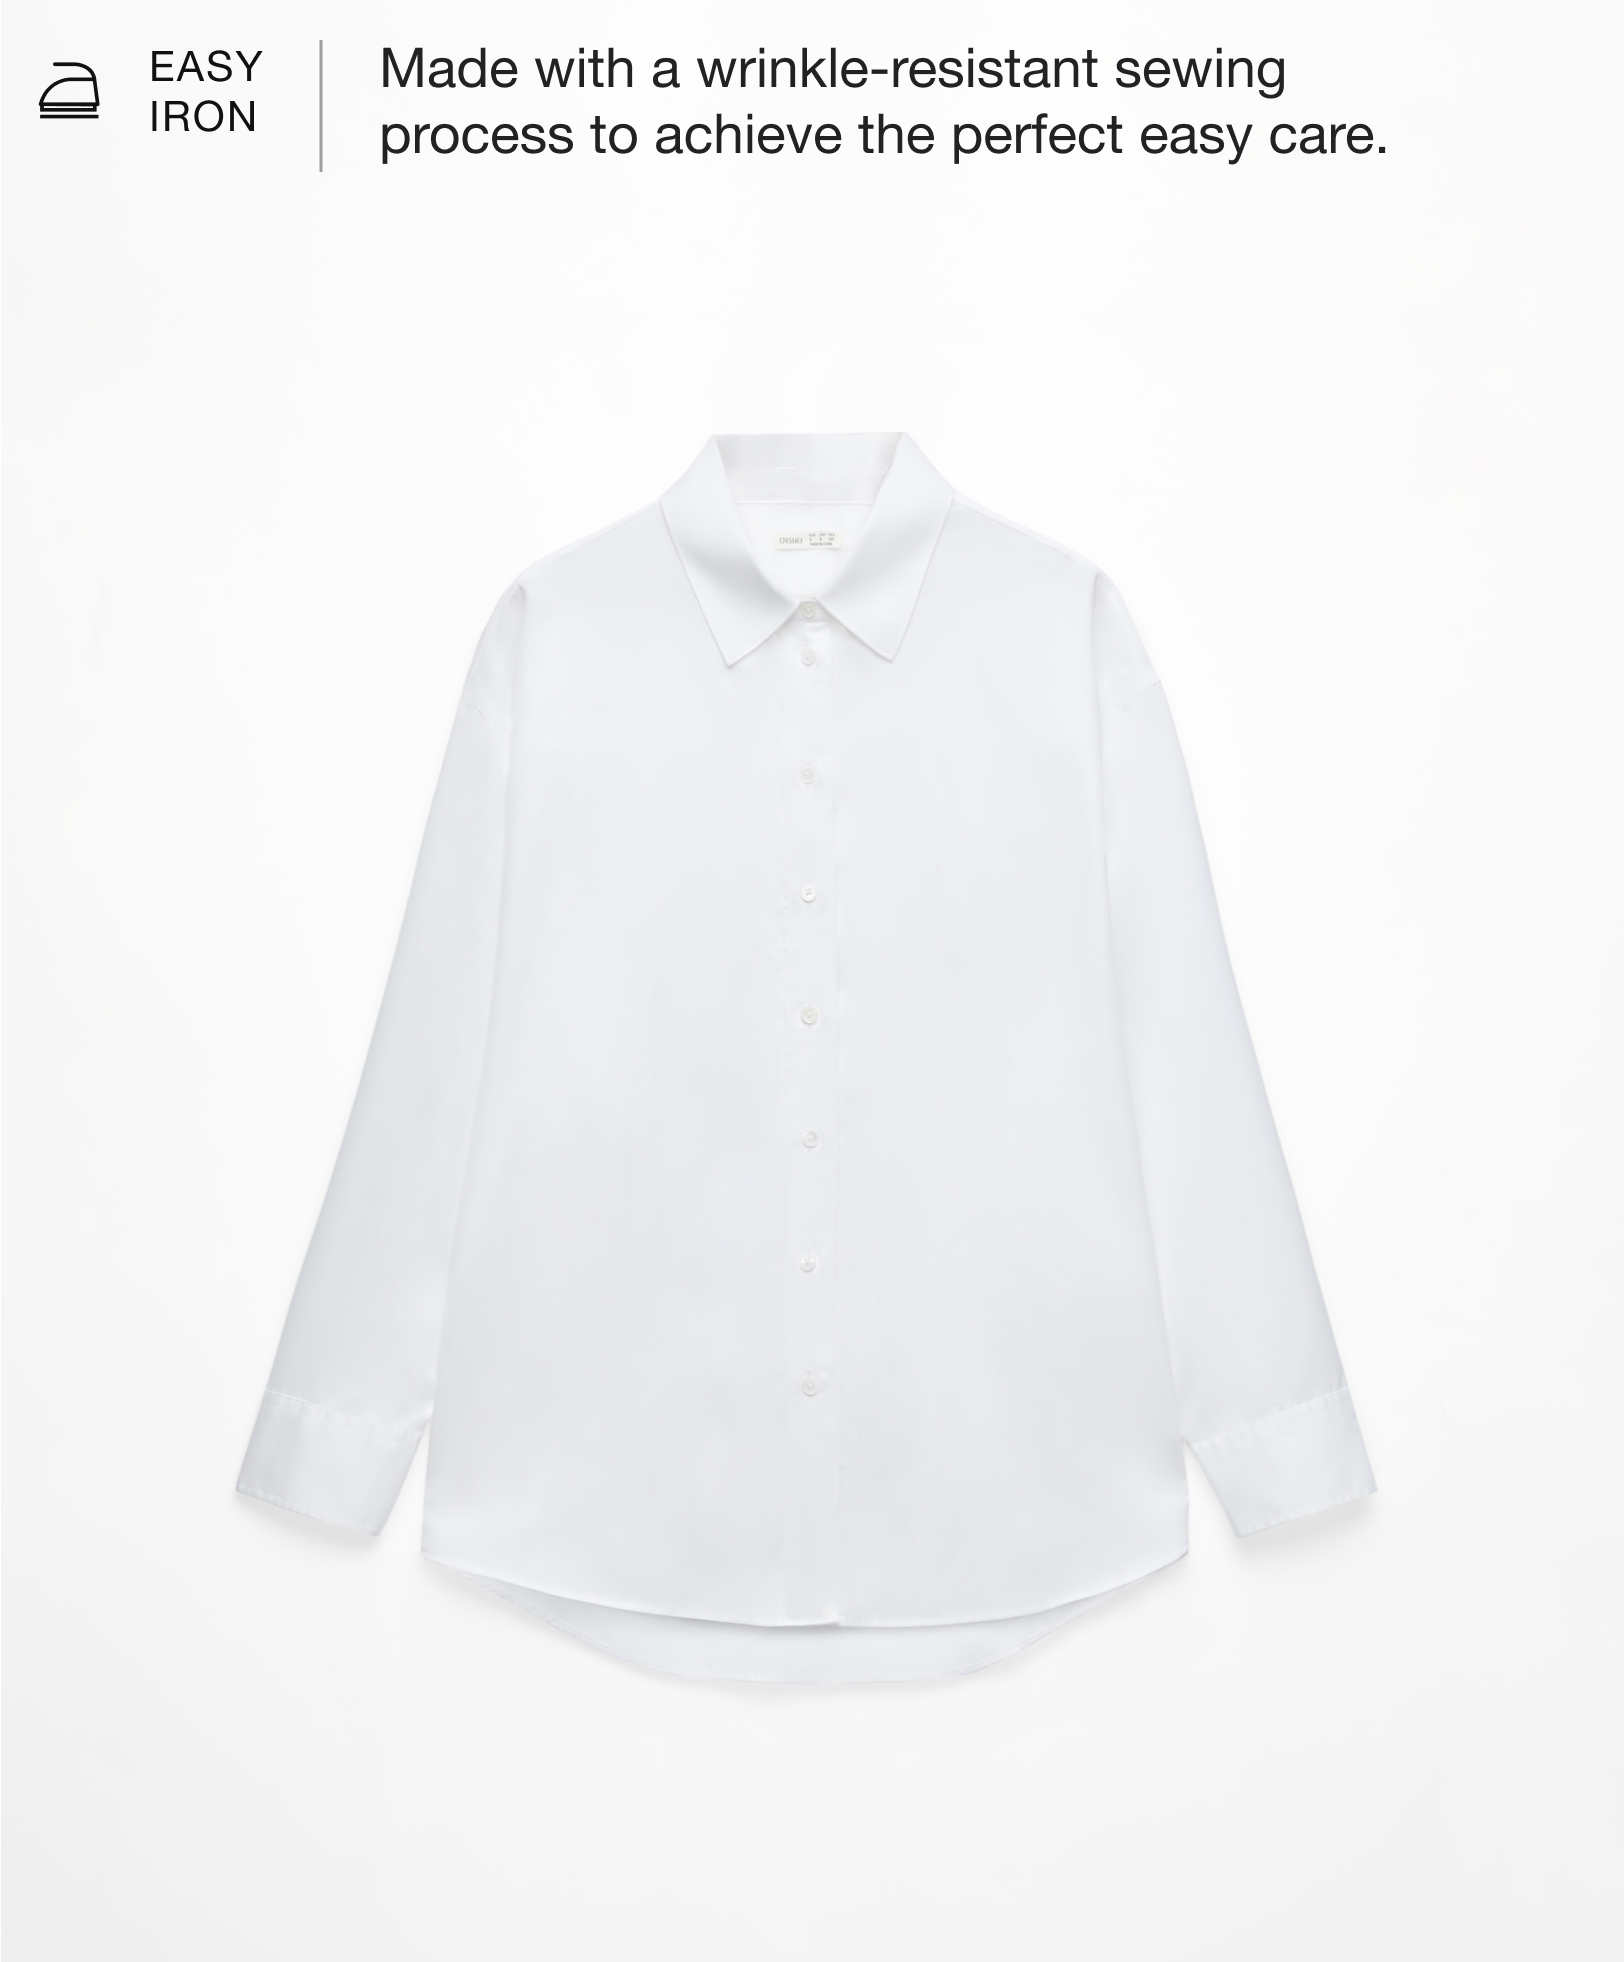 100% cotton easy iron shirt